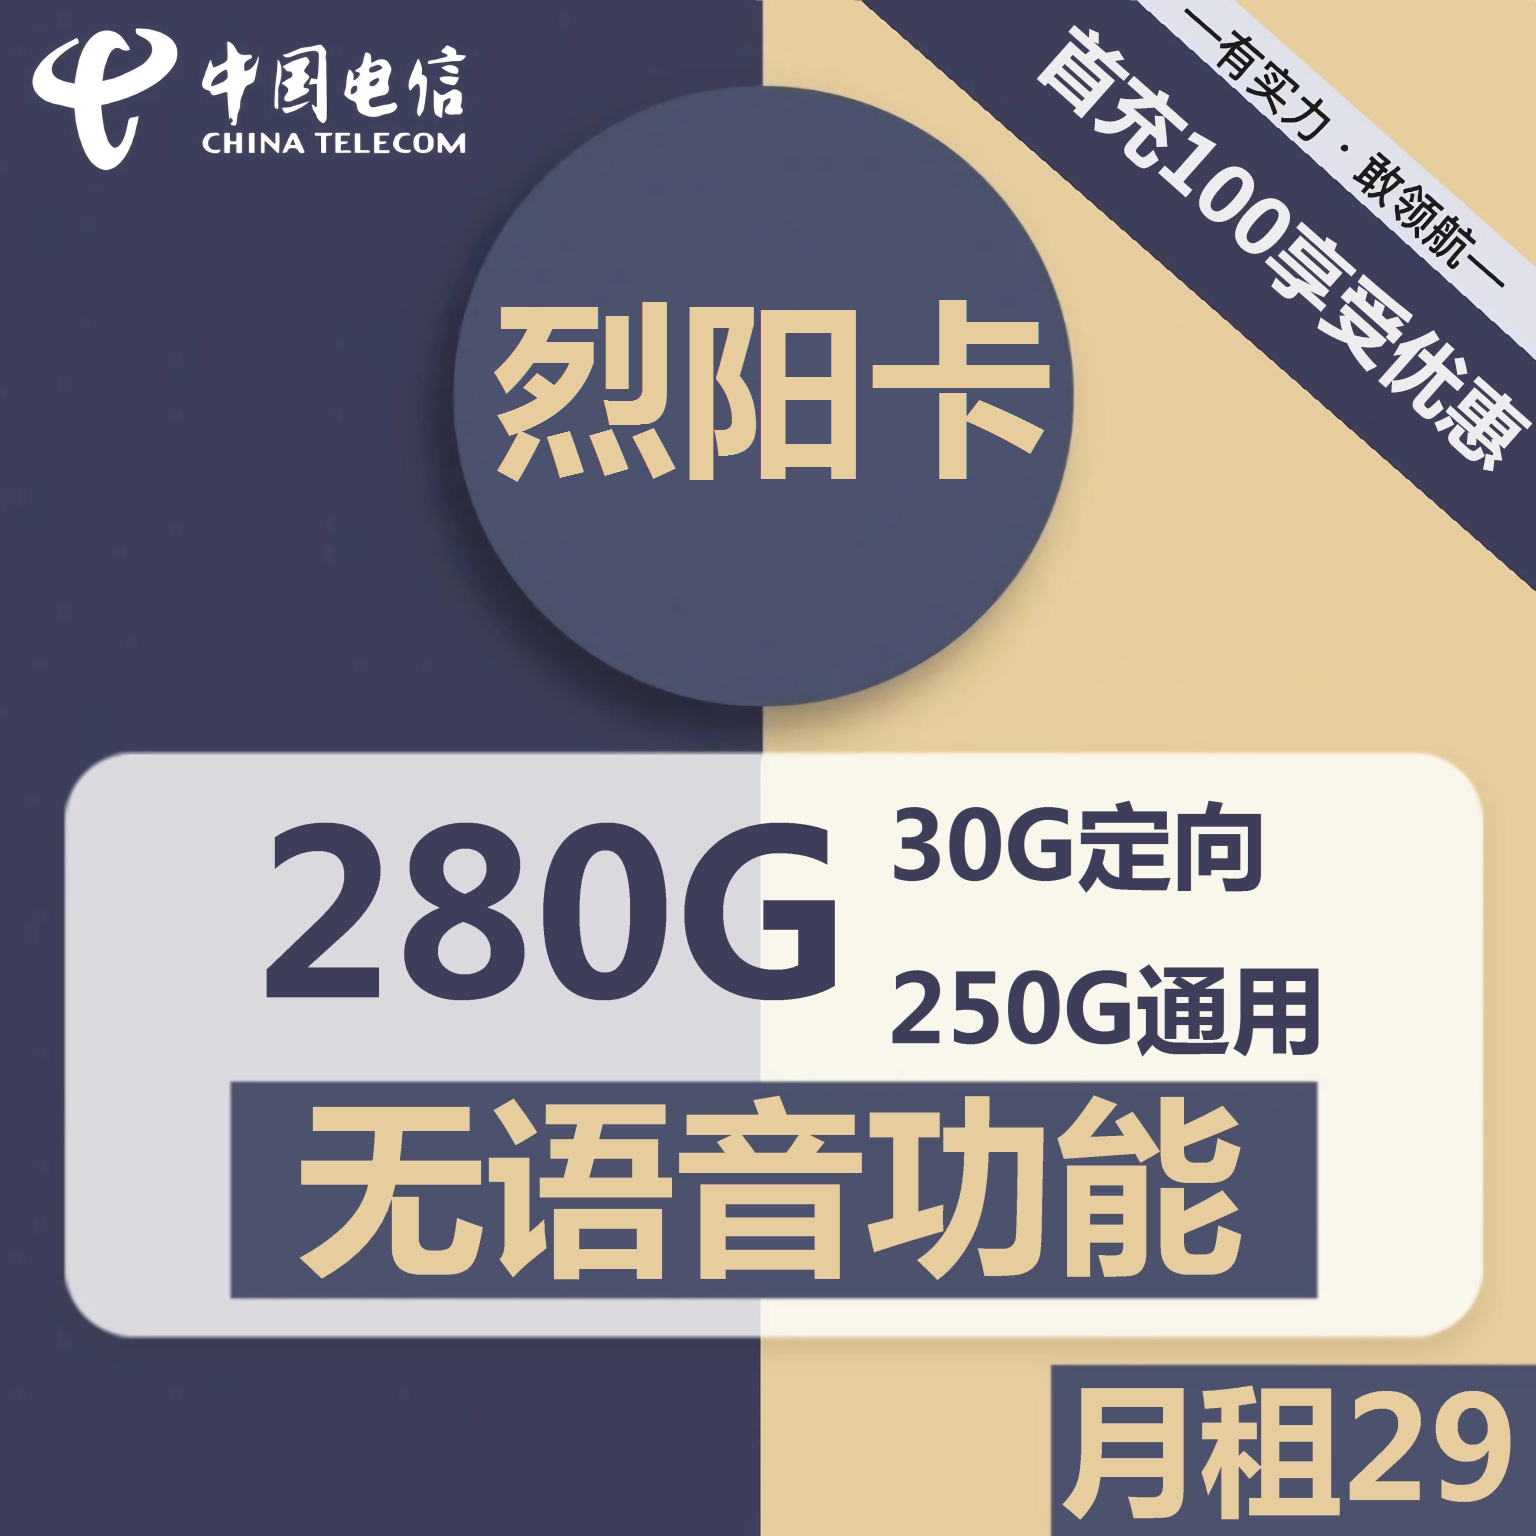 安徽电信烈阳卡29元包250G通用+30G定向+无语音功能